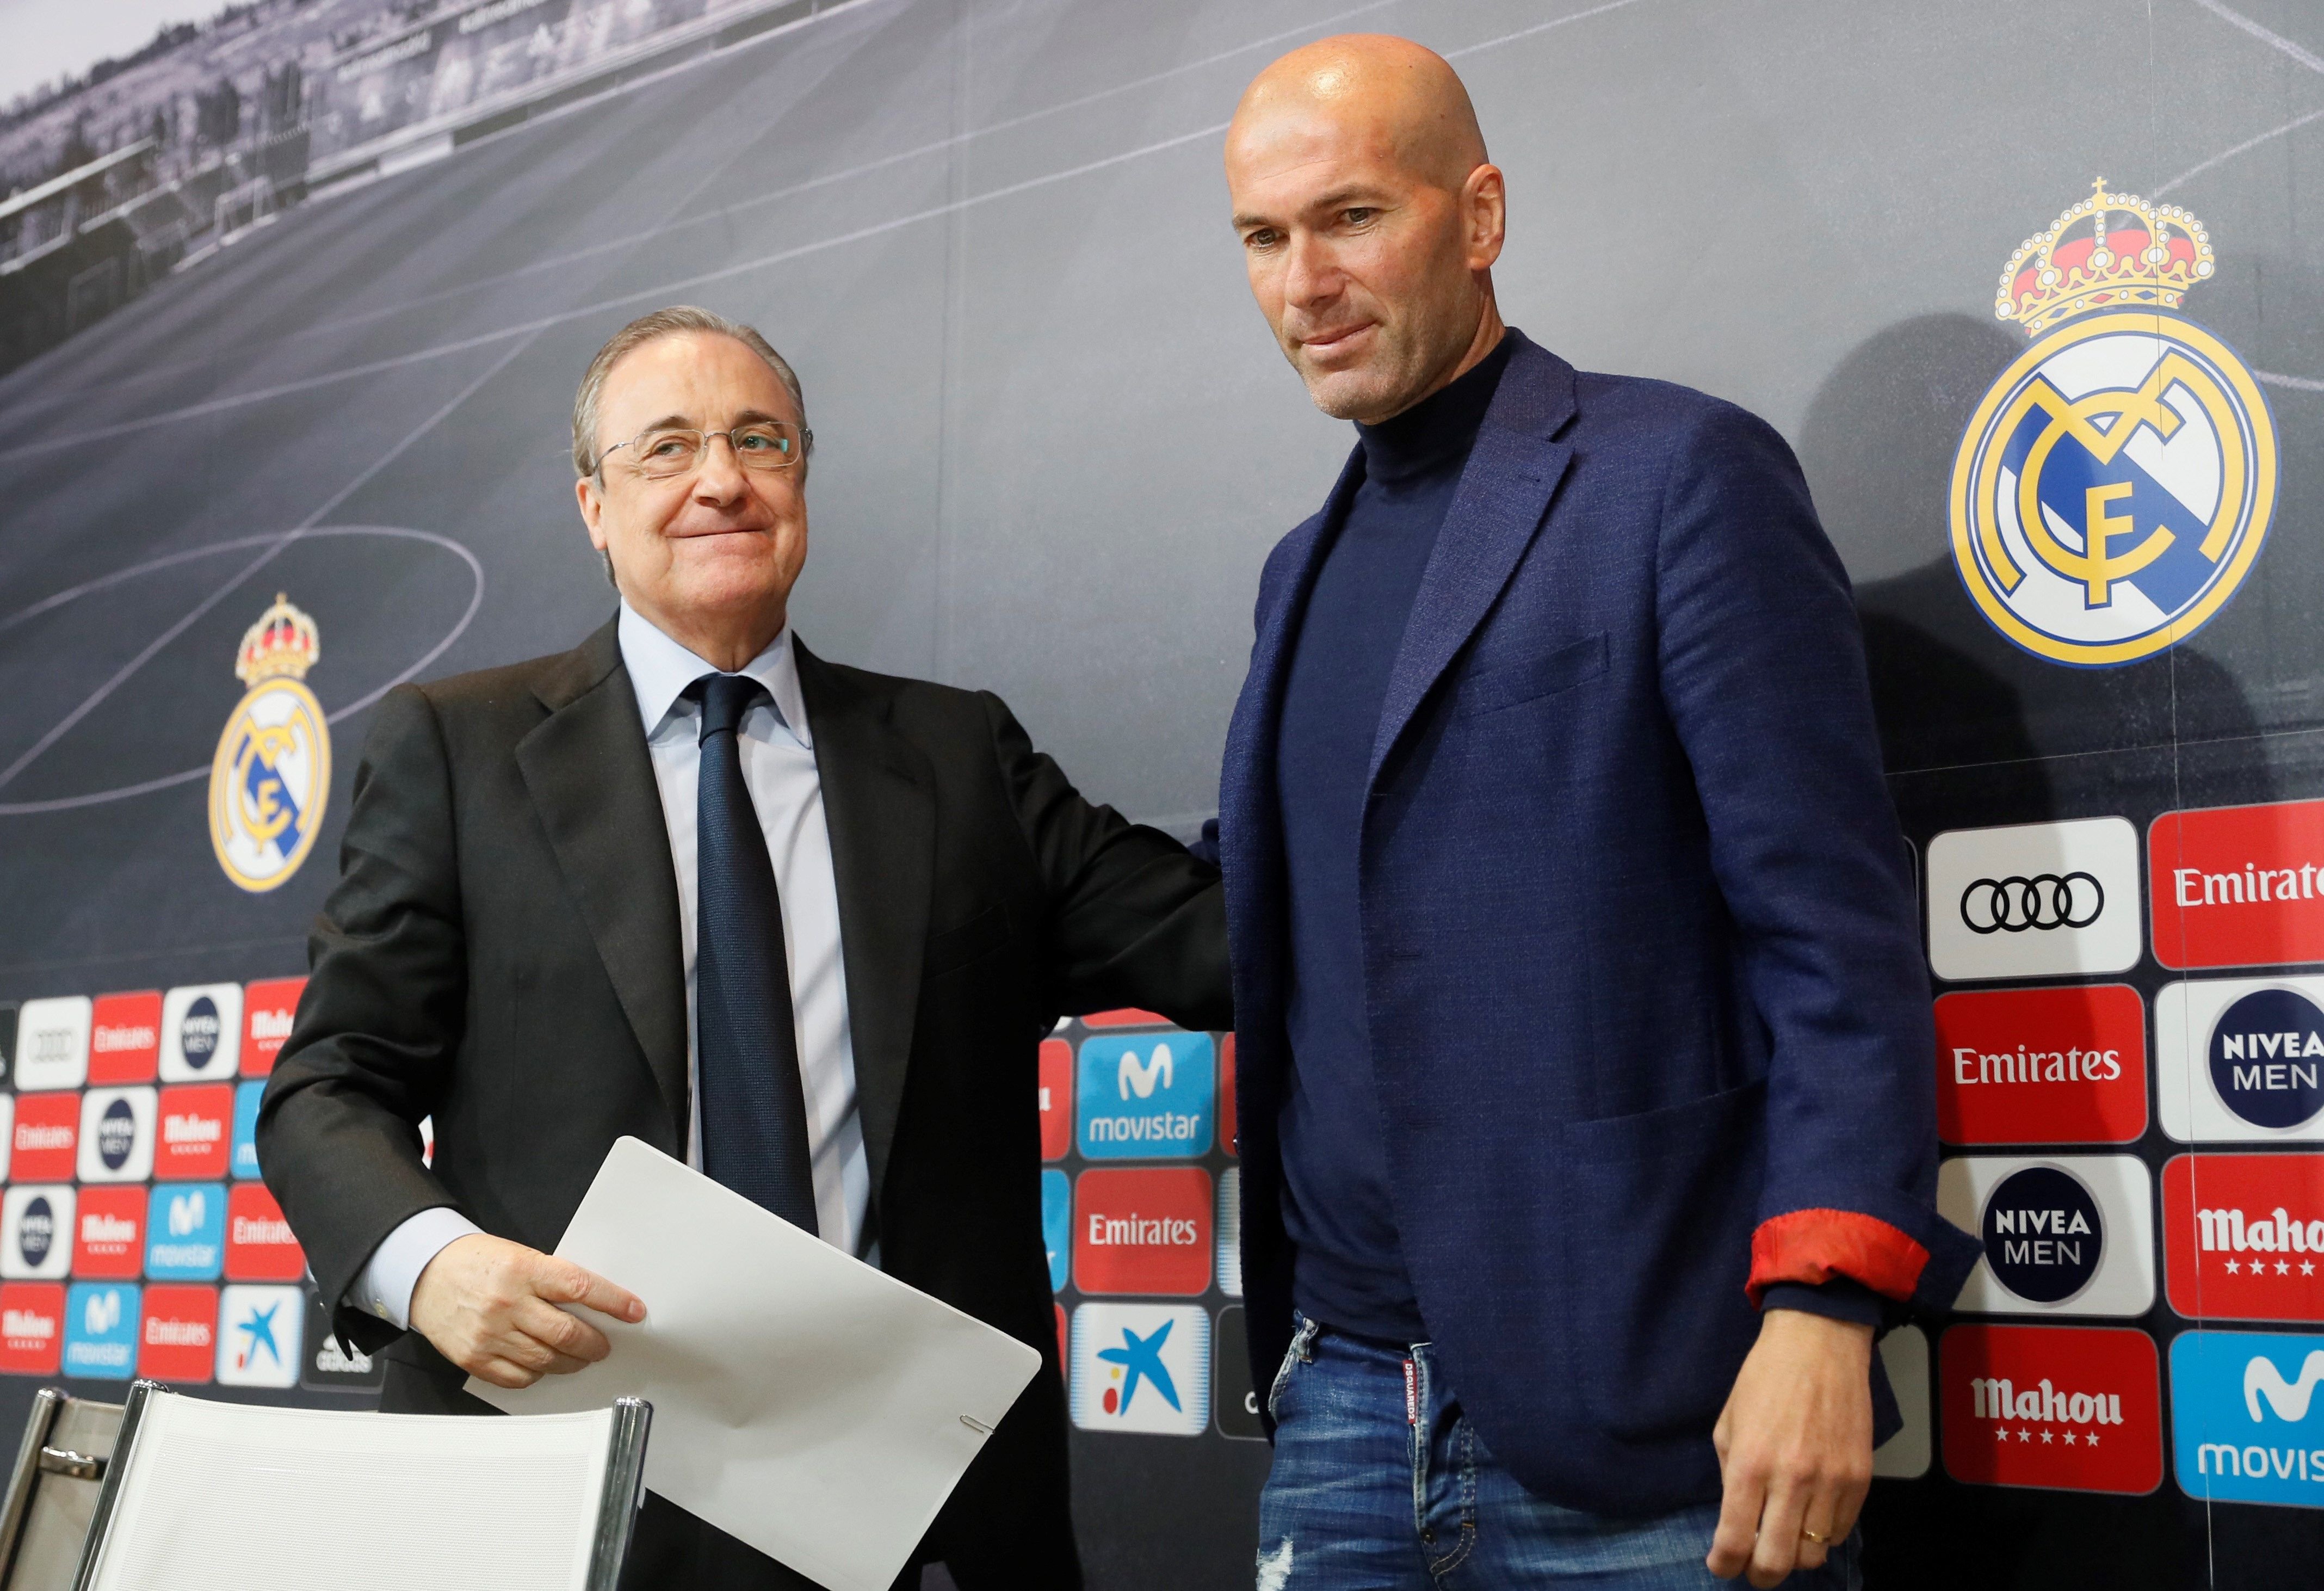 Zidane va demanar el seu fitxatge a Florentino Pérez quan va marxar Cristiano Ronaldo: ara és dels pitjors